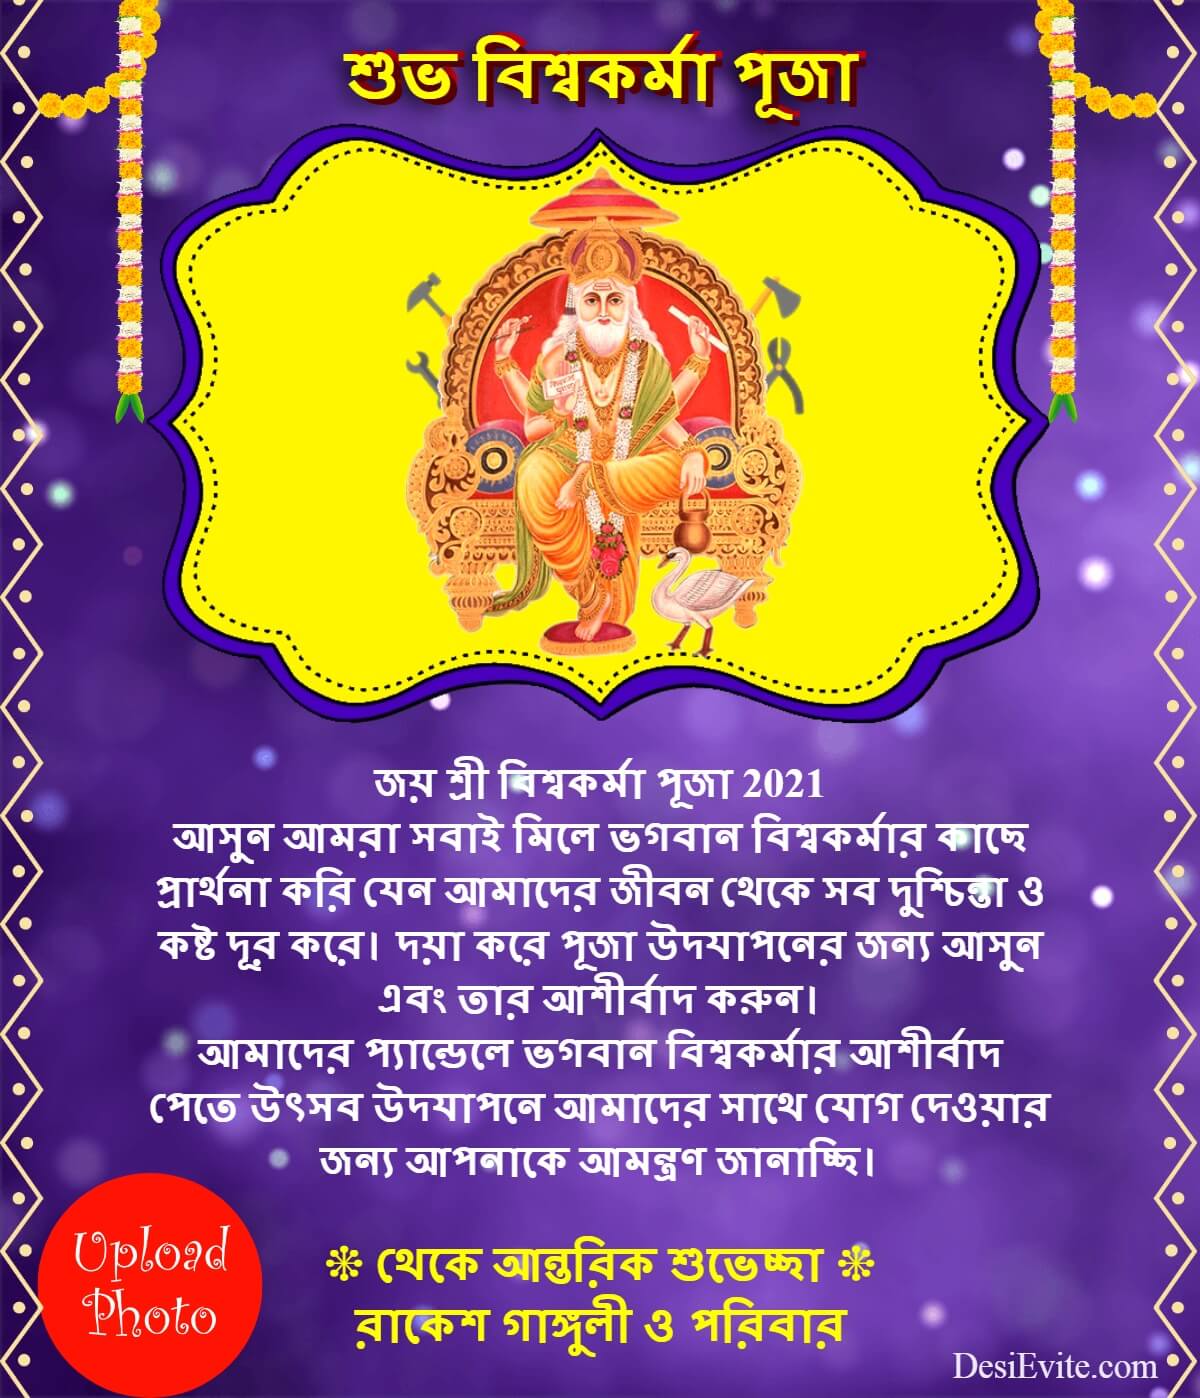 bengali-vishwakarma-puja-invitation-card